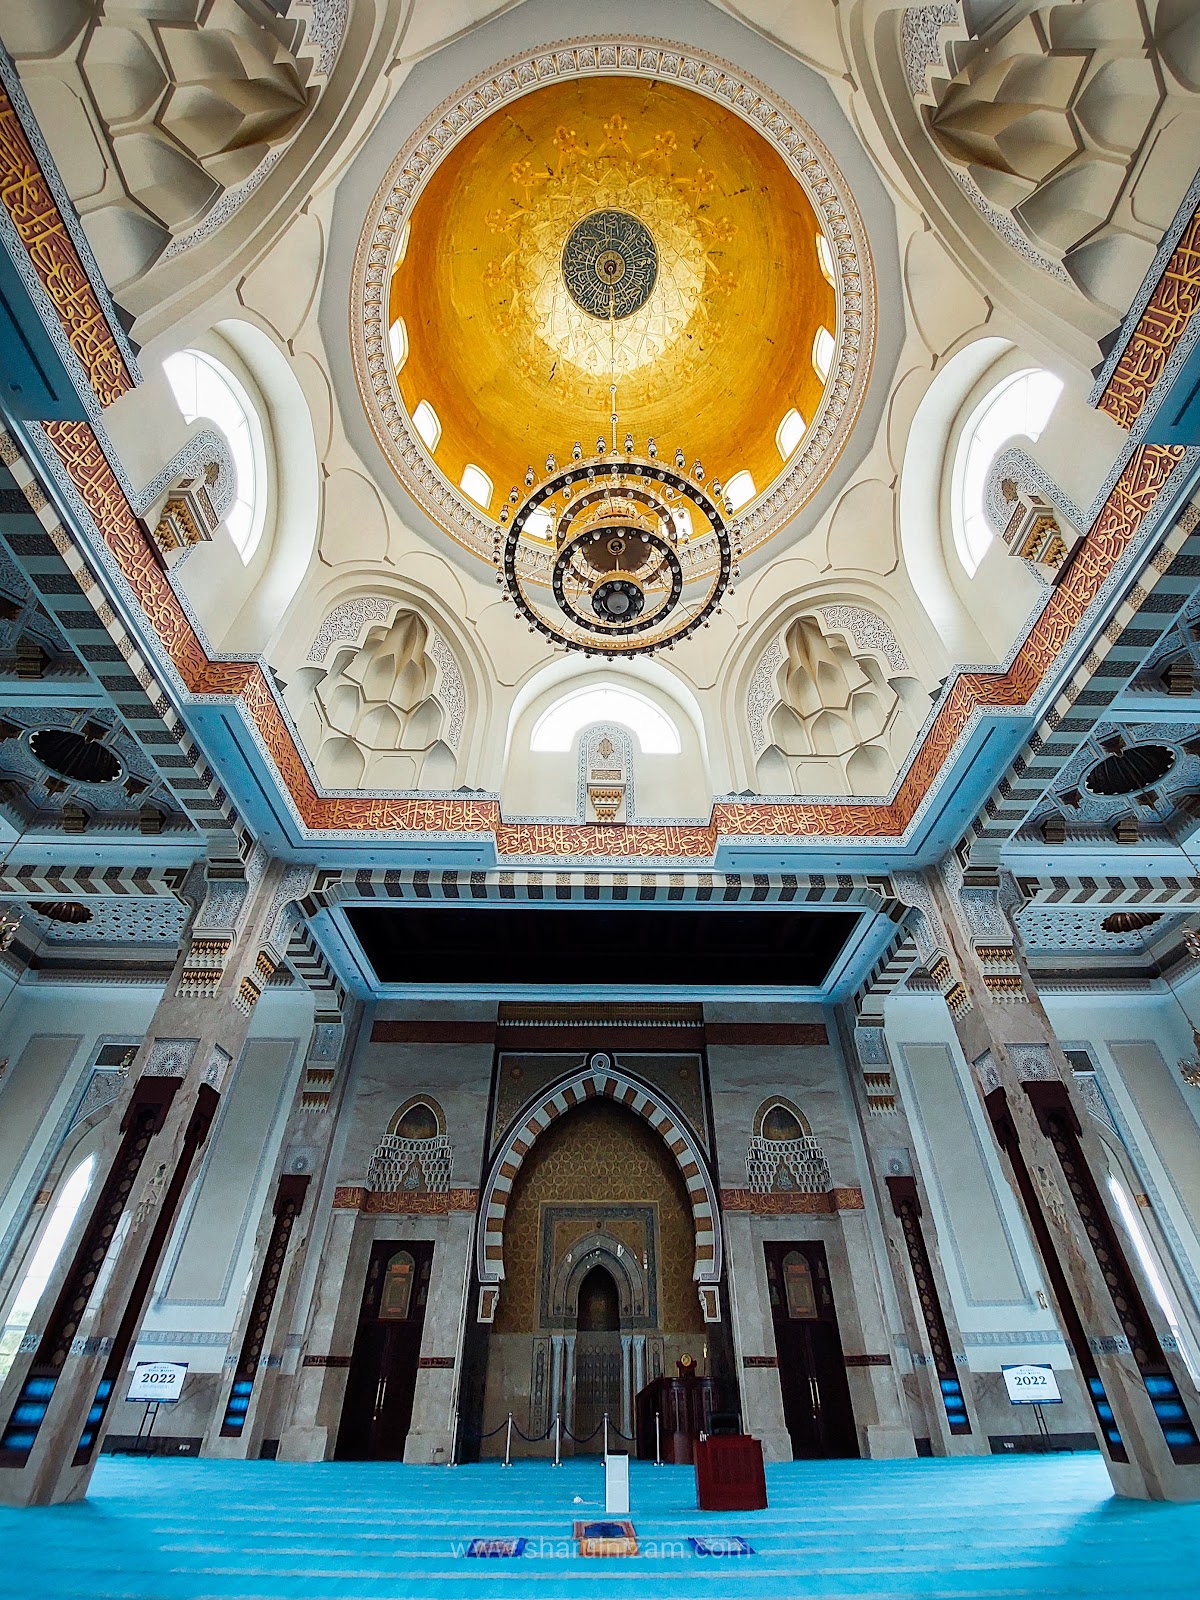 Singgah Solat Sunat Di Masjid Sri Sendayan, Negeri Sembilan